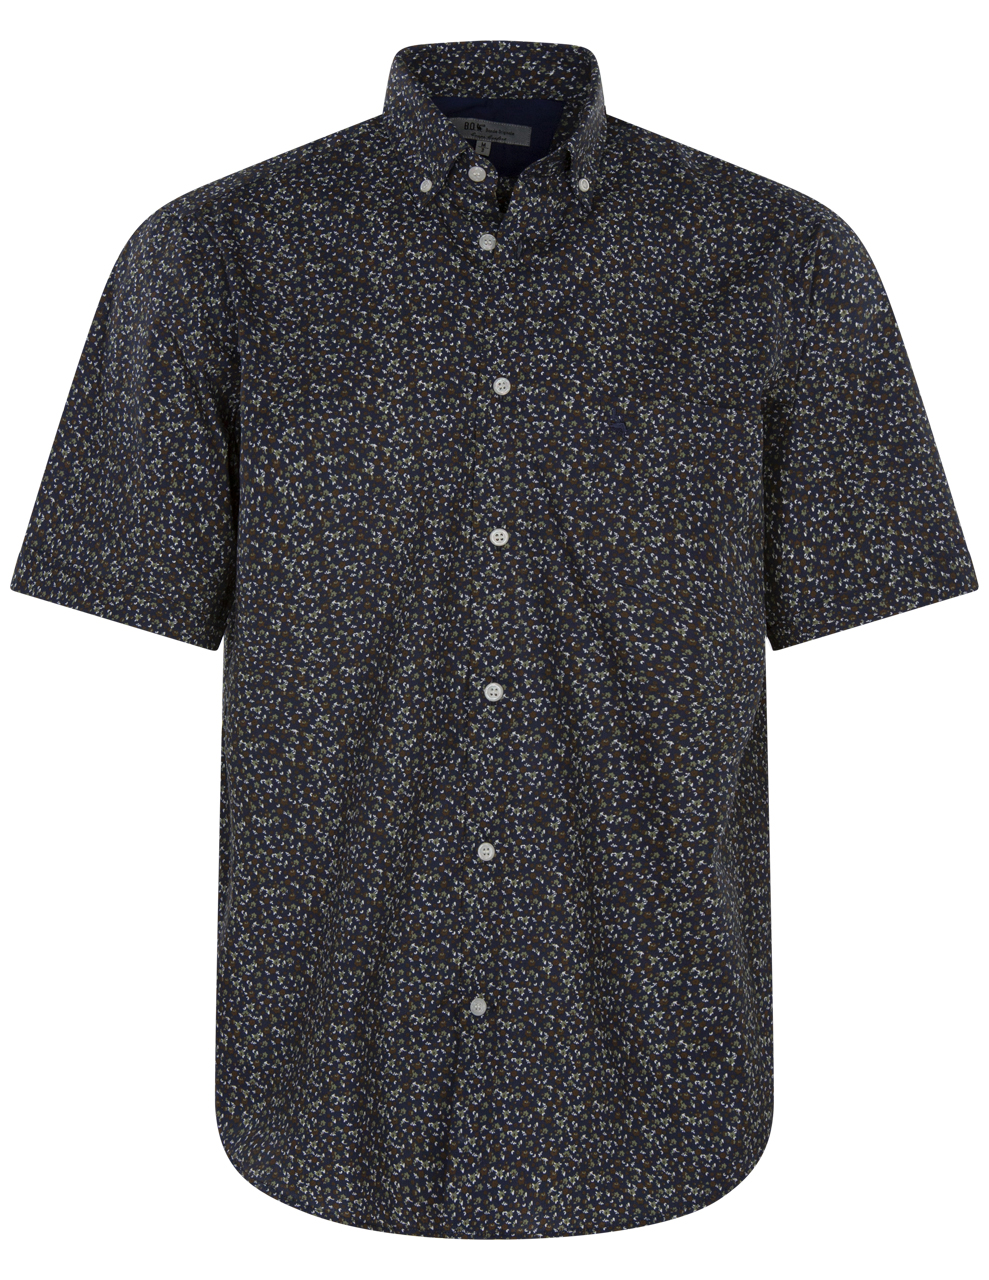 chemise bande originale en coton avec manches courtes et col américain bleu marine fleurie